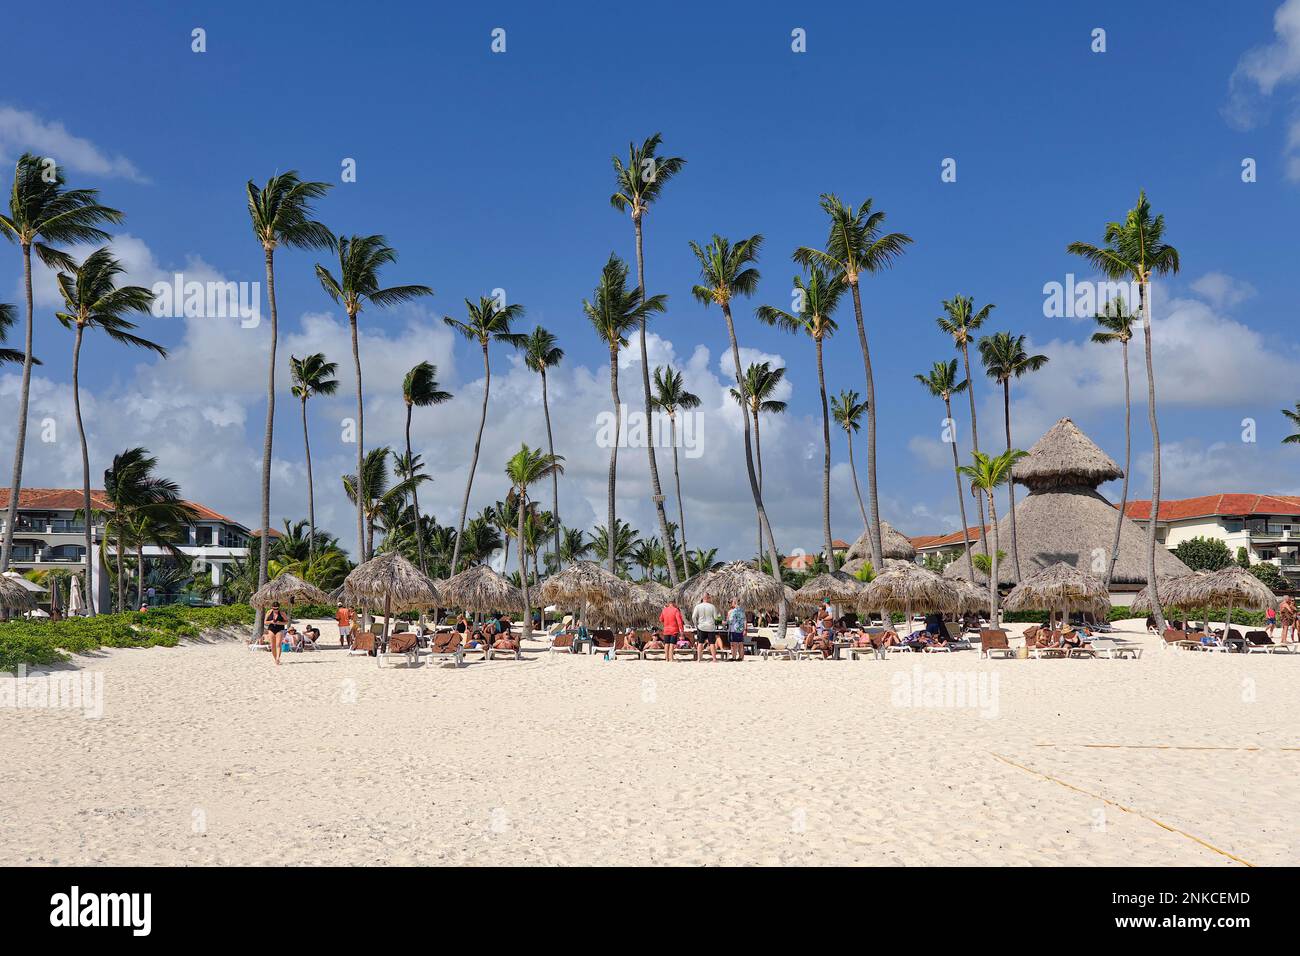 Bar de hojas de palma y sombrillas, Playa Los Corales Bávaro, Punta Cana, República Dominicana, Caribe, América Central Foto de stock